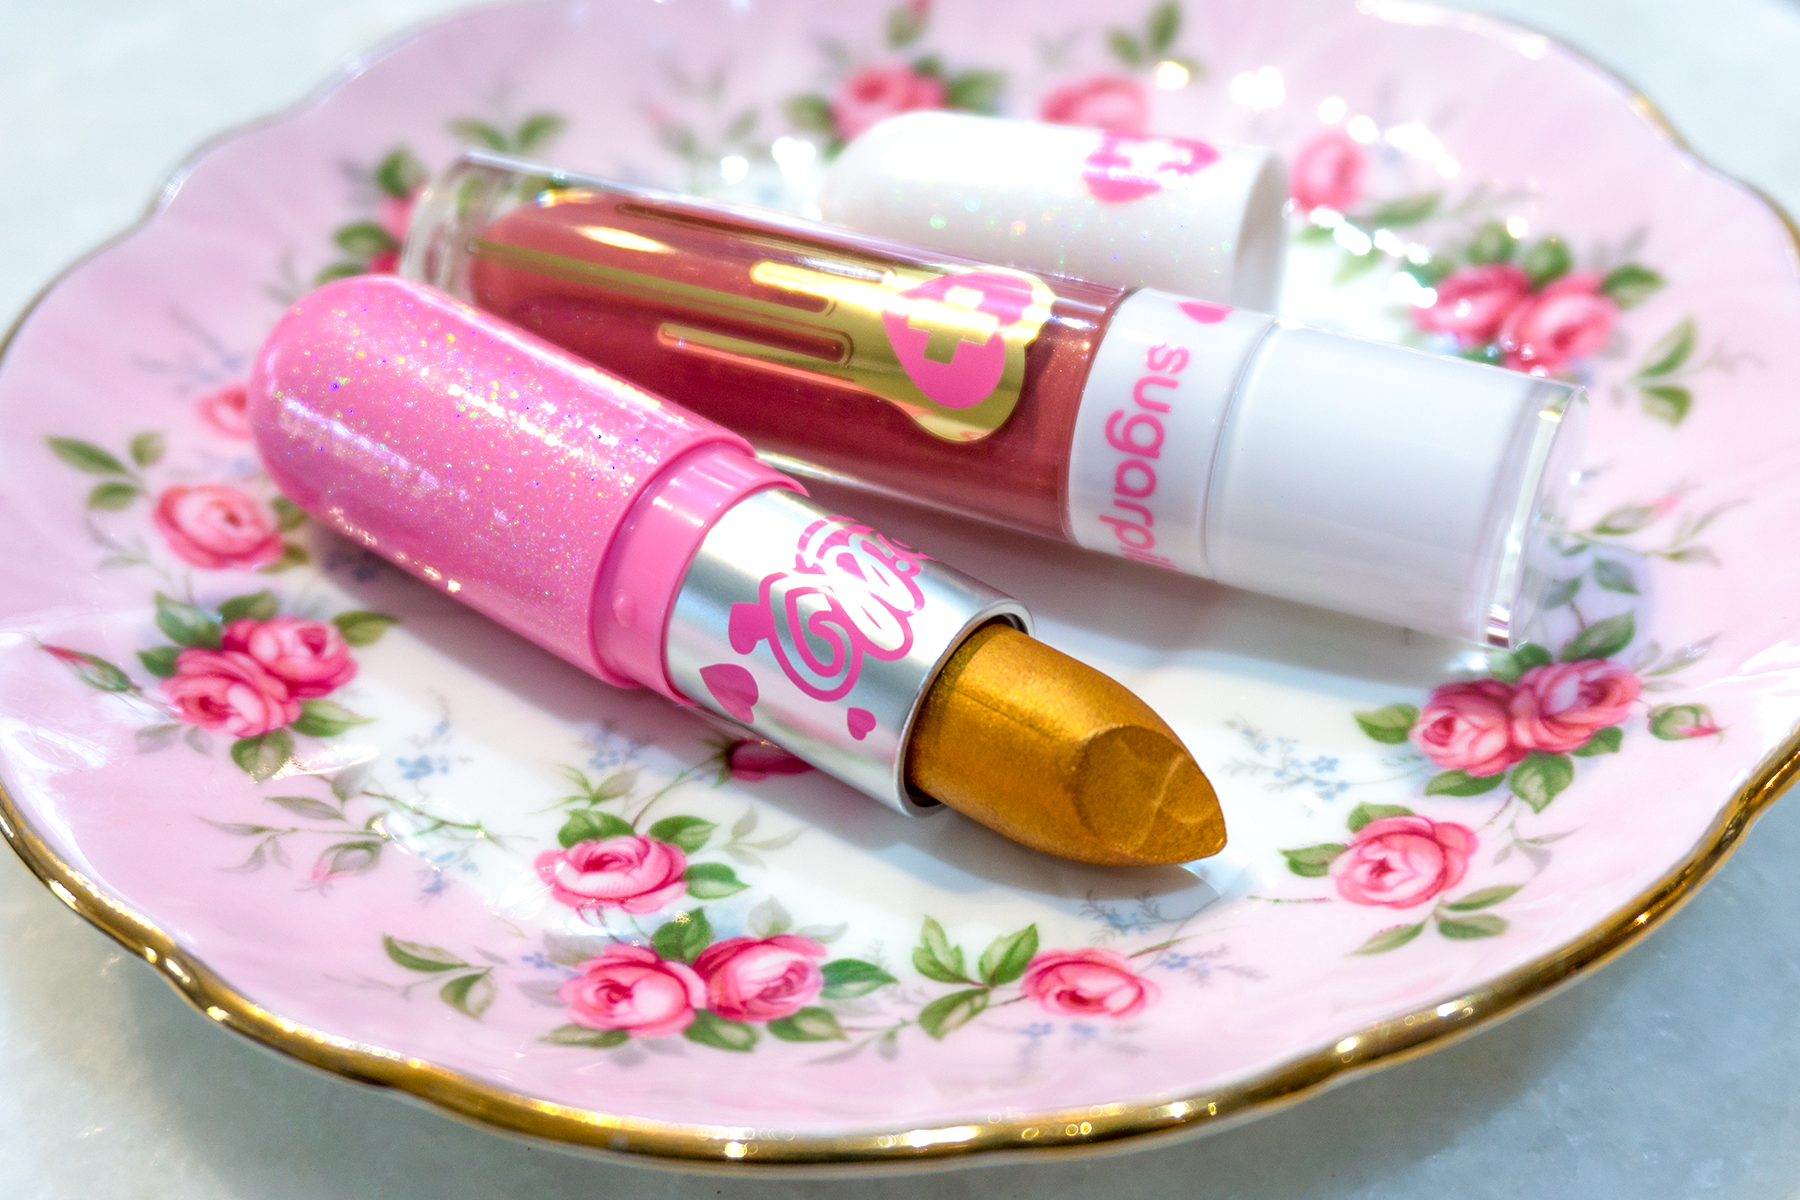 Getting Sweet on Sugarpill: Trinket and Glint Lipsticks